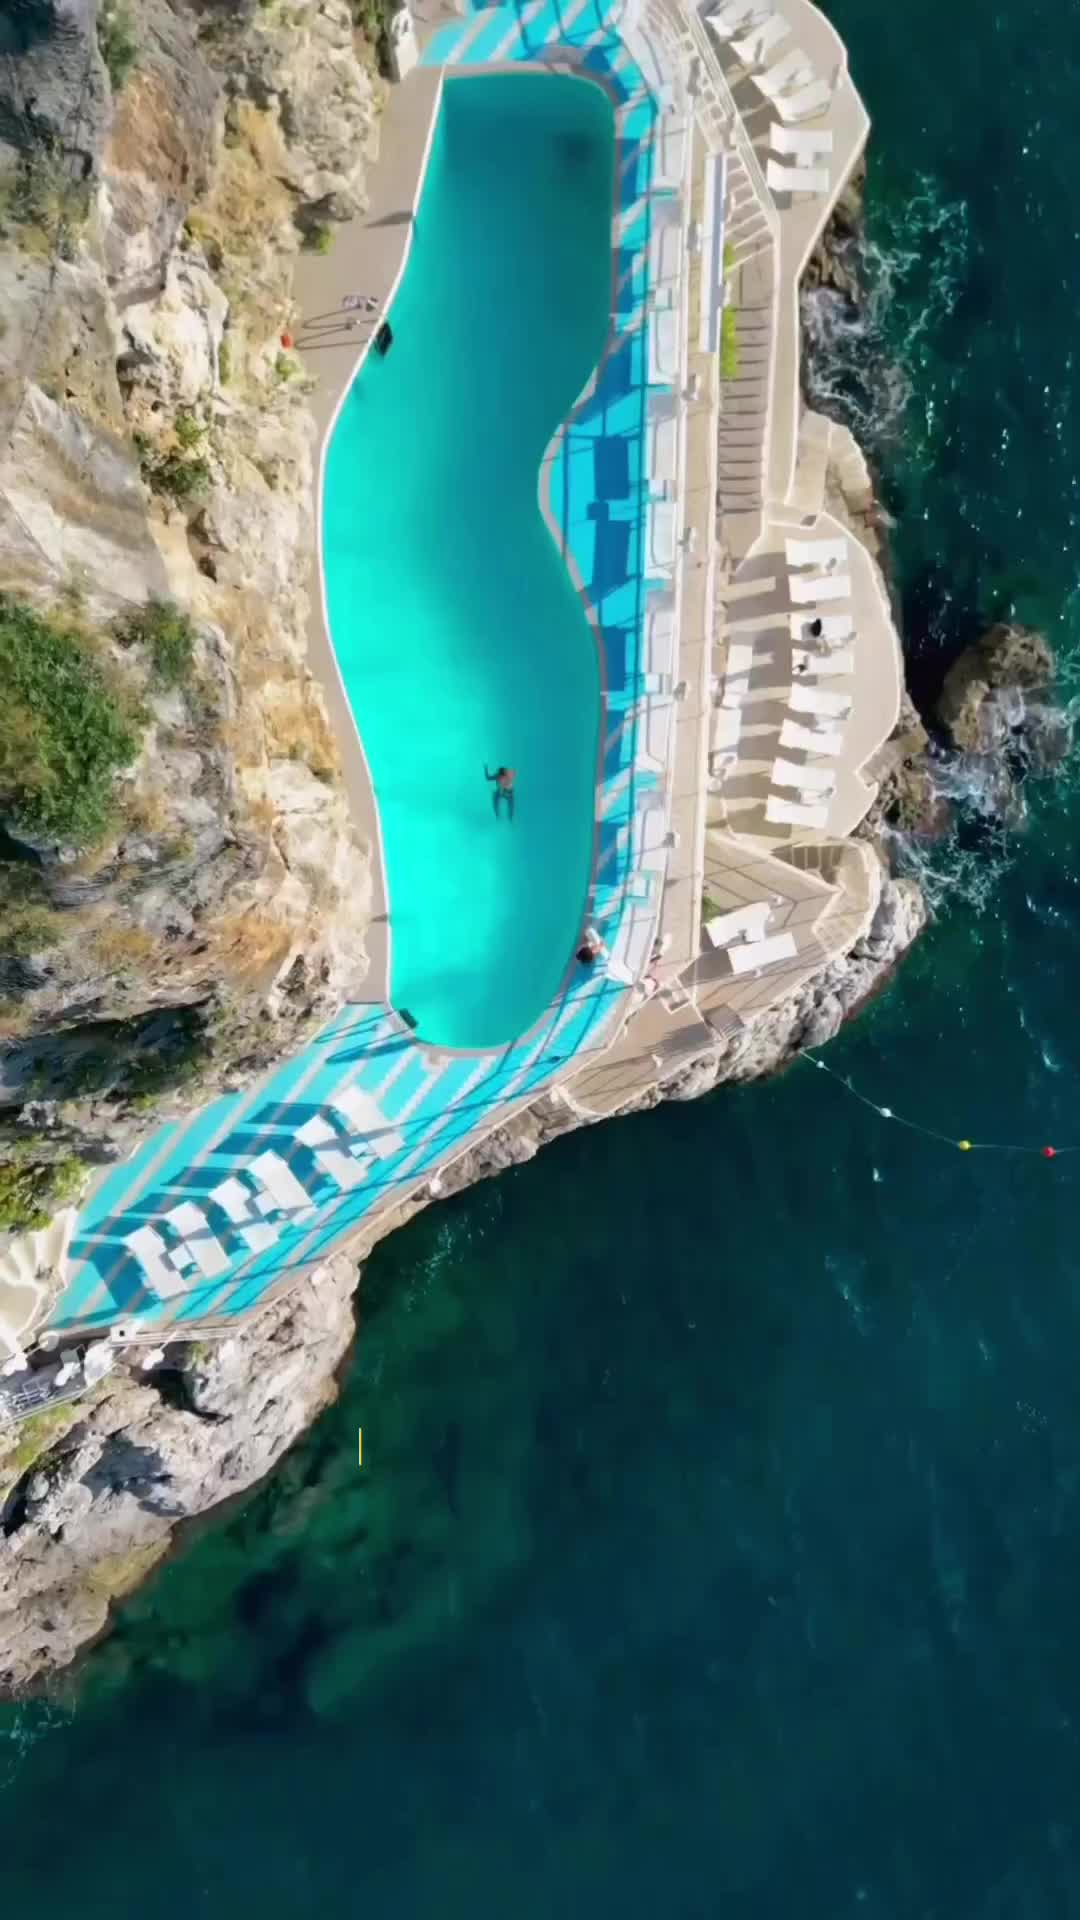 Swimming Pool in Rocks at Hotel Miramalfi, Amalfi Coast